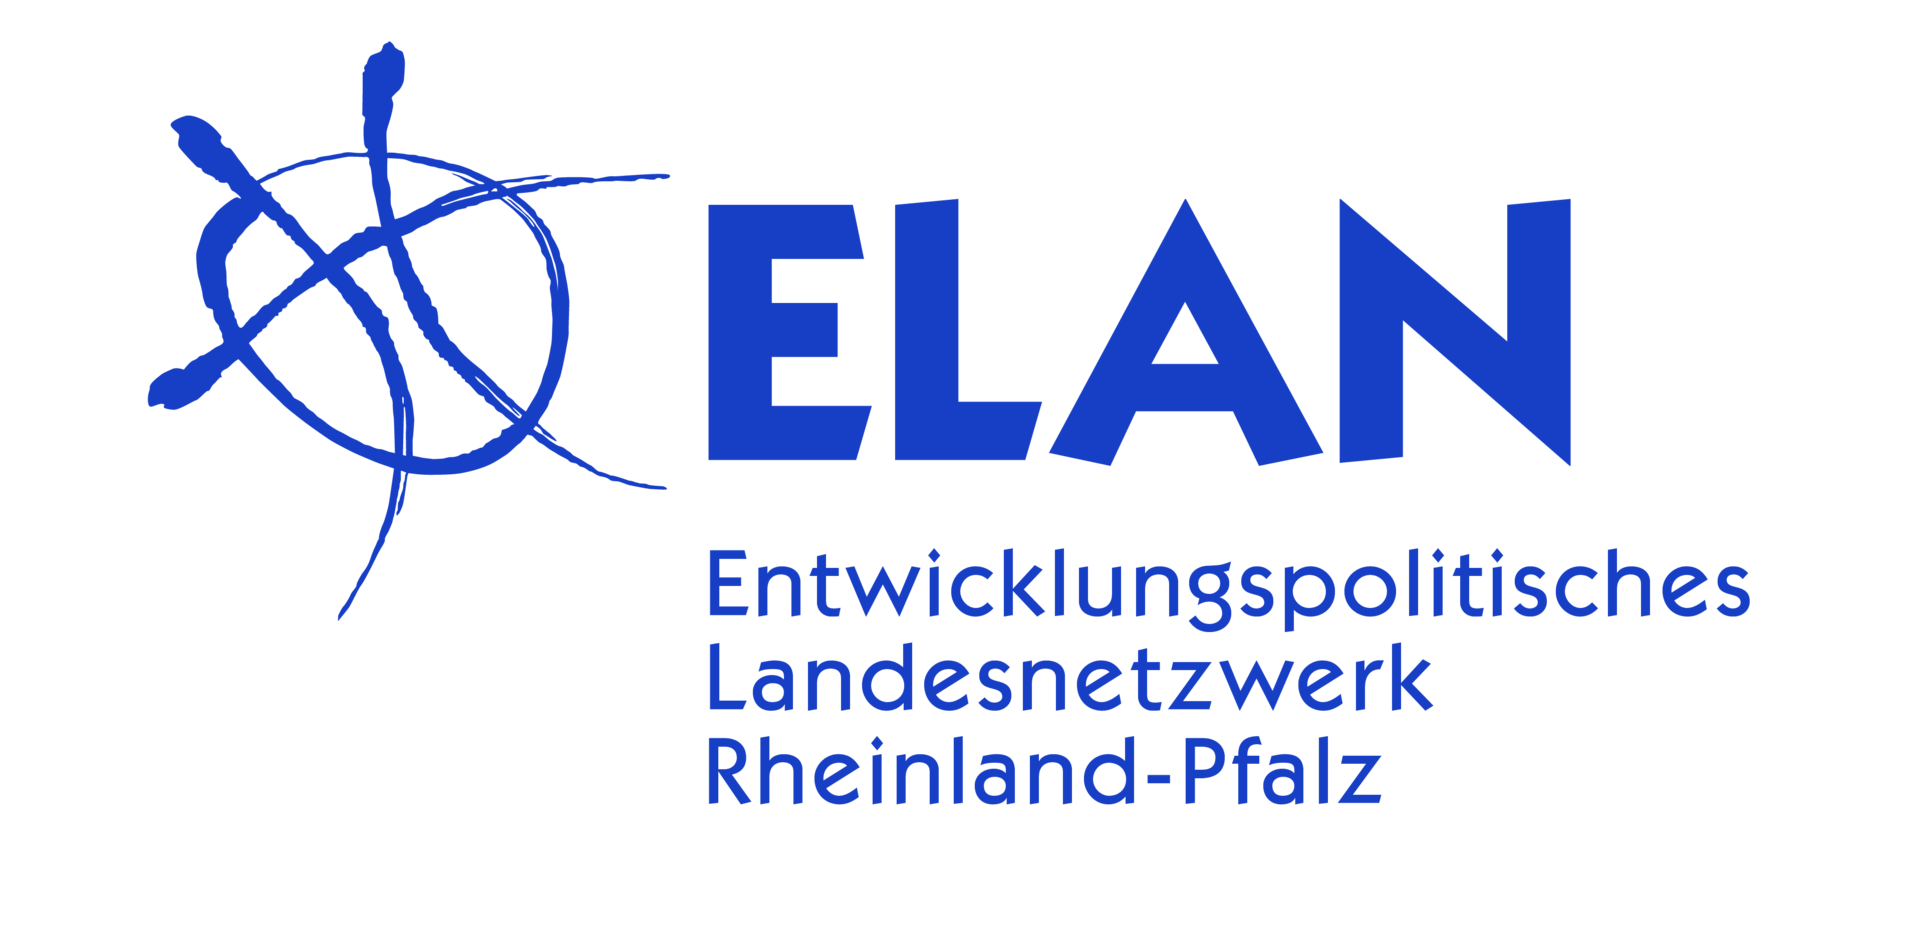 Logo ELAN Entwicklungspolitisches Landesnetzwerk Rheinland-Pfalz e. V.